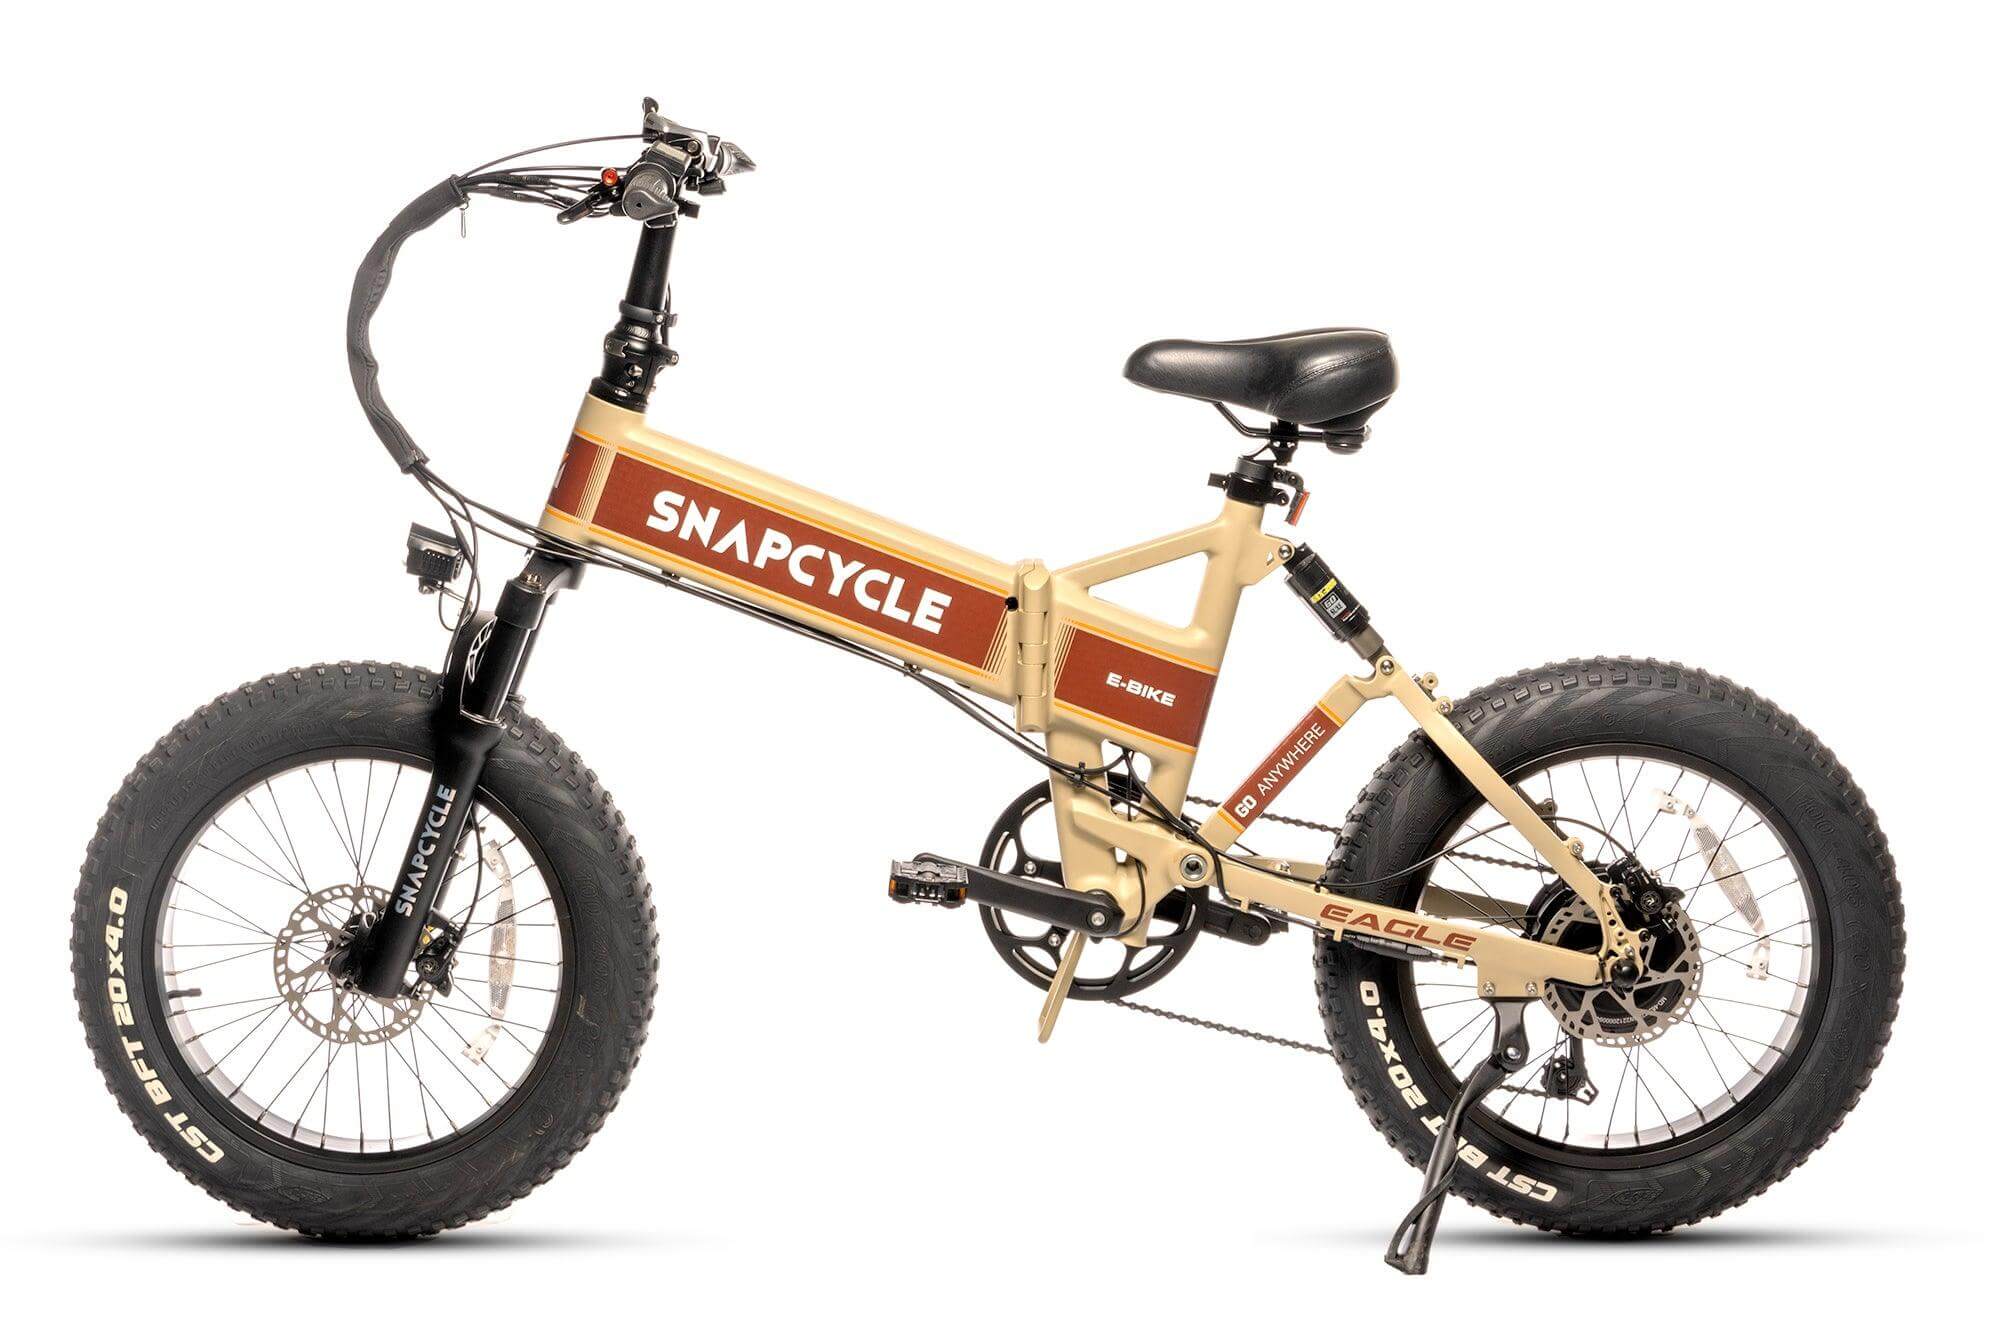 Snapcycle Eagle - Snapcycle Bikes SC-EAGLE-BK